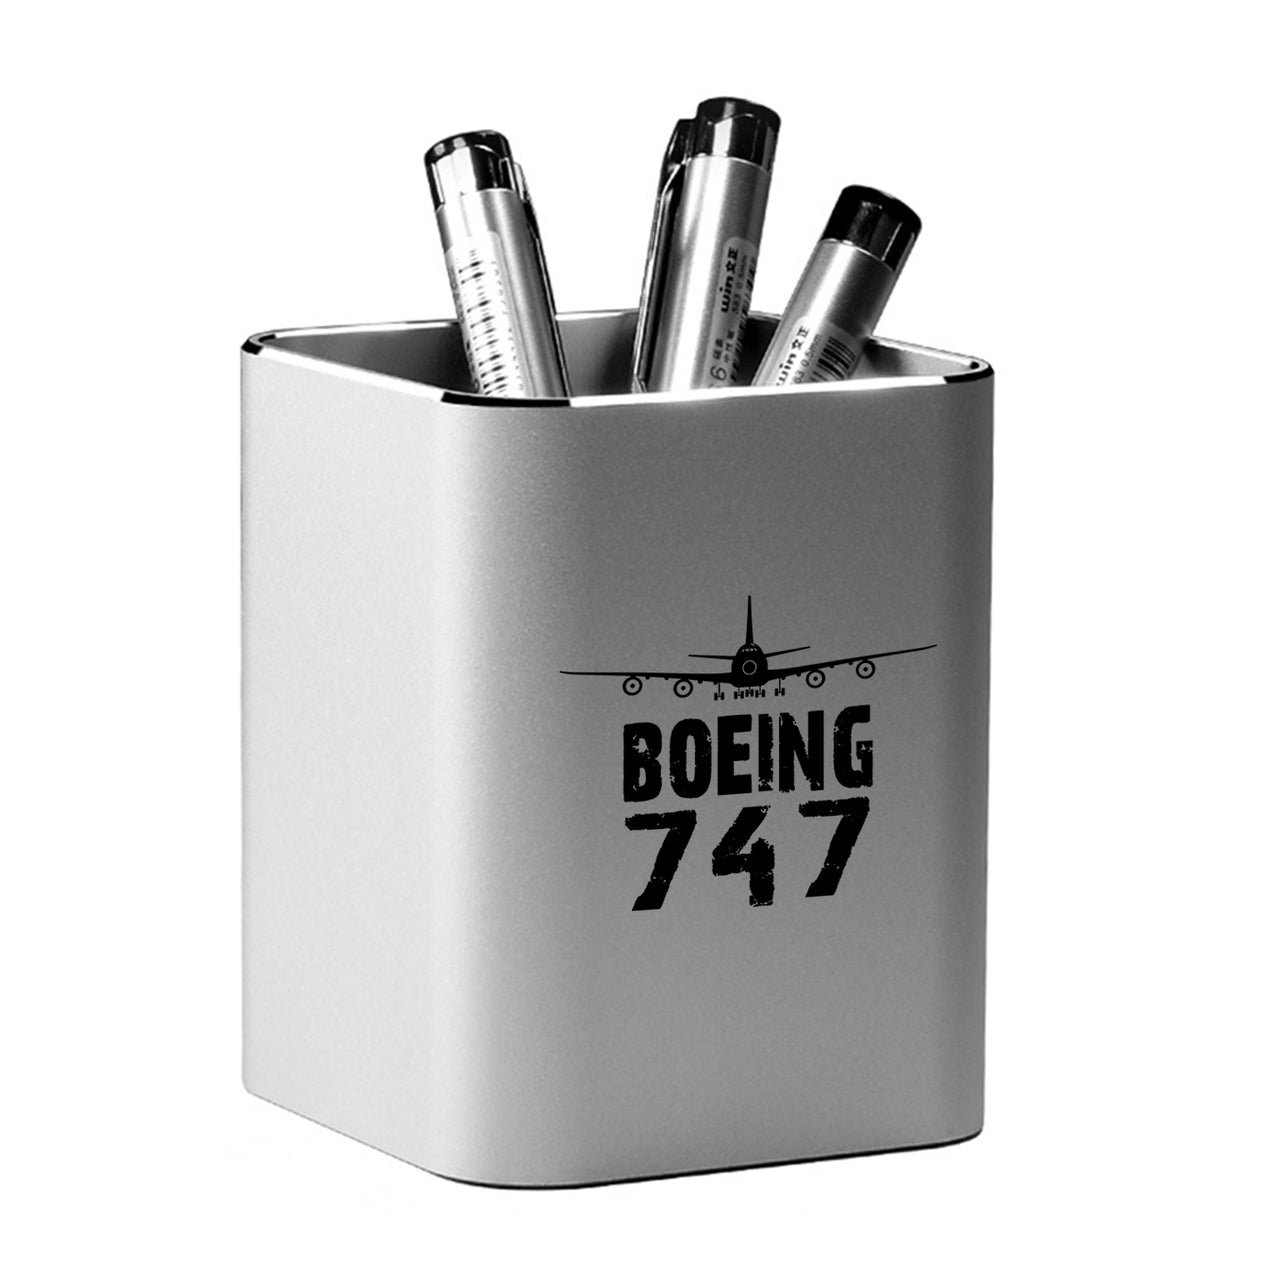 Boeing 747 & Plane Designed Aluminium Alloy Pen Holders